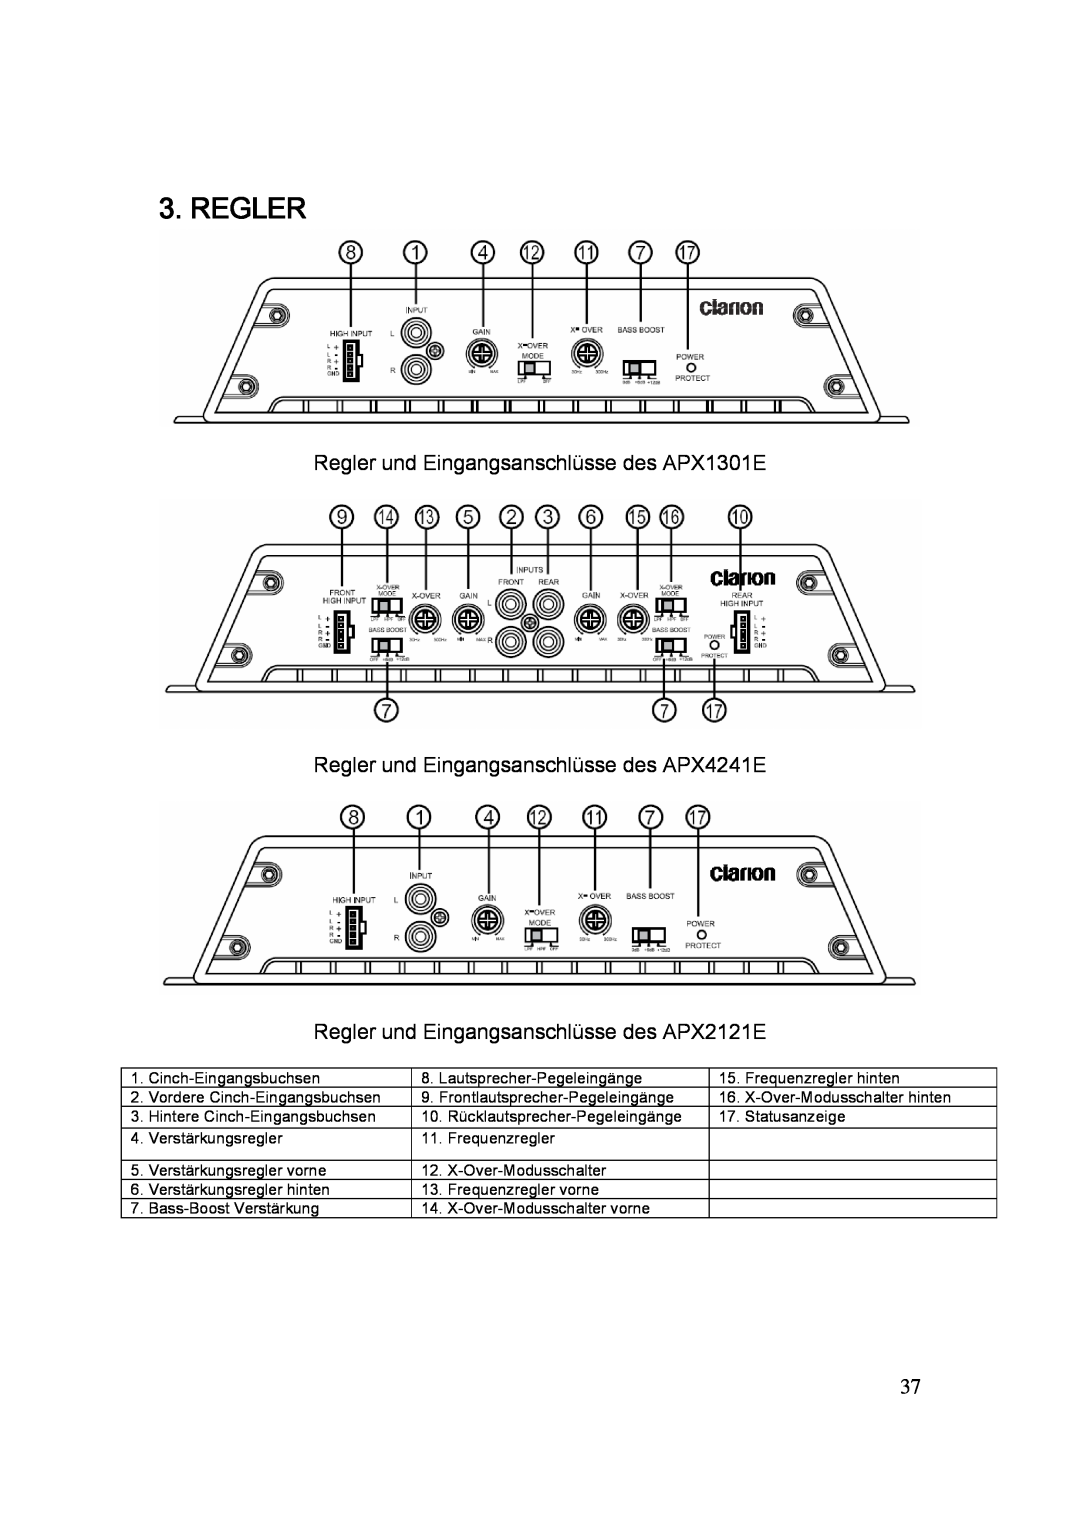 Clarion APX2121E manual Regler und Eingangsanschlüsse des APX1301E, Regler und Eingangsanschlüsse des APX4241E 